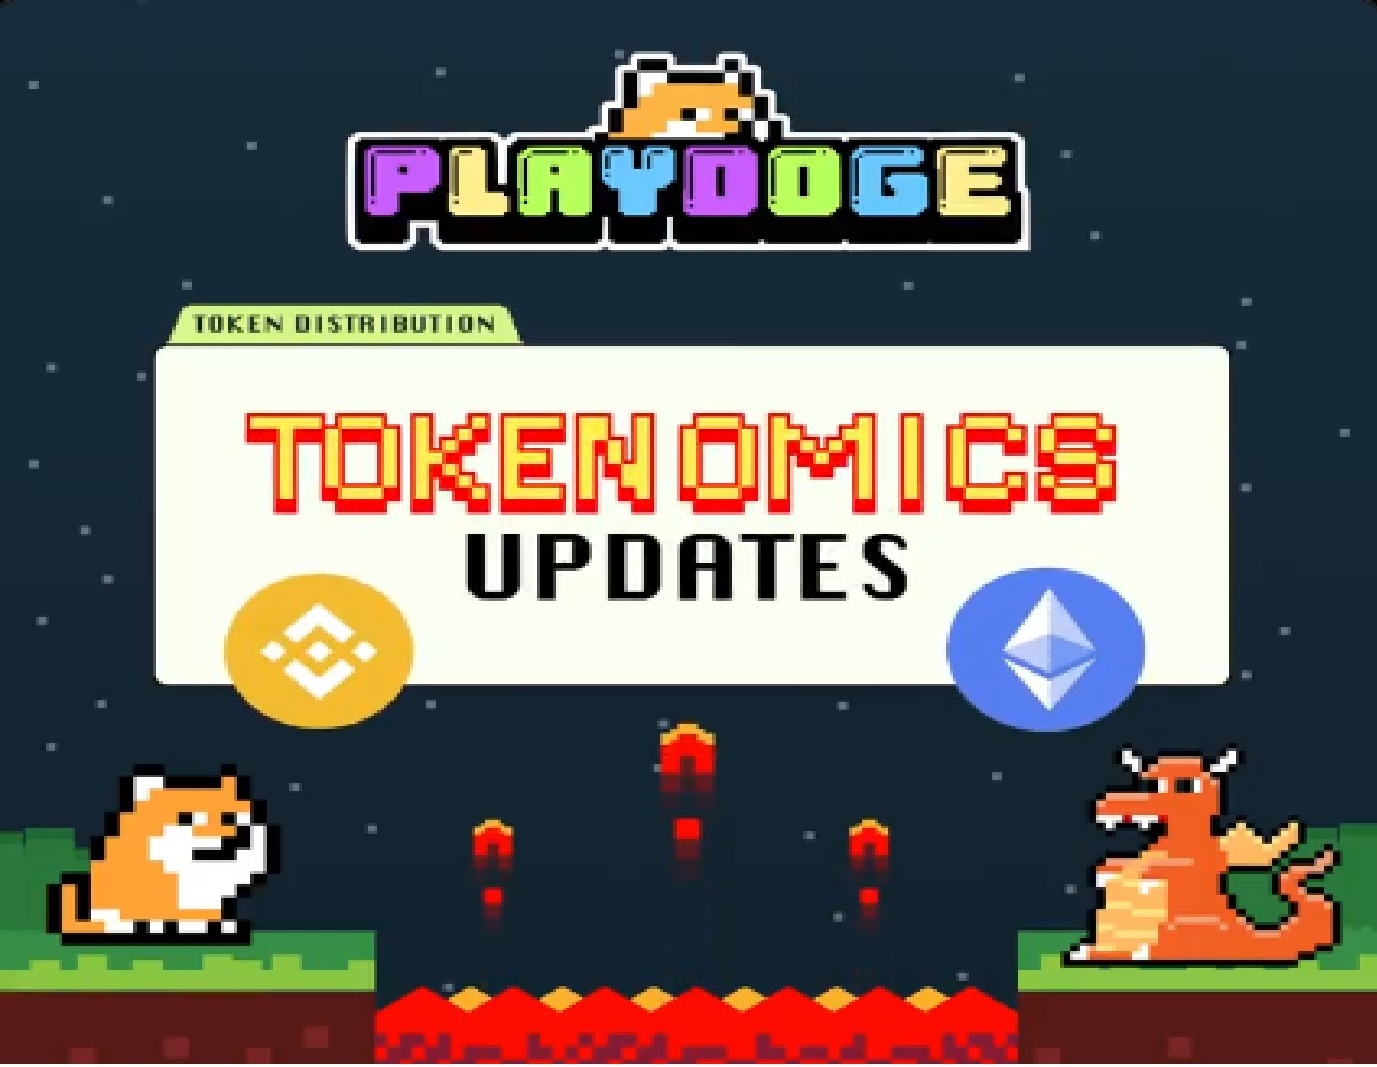 PlayDoge Tokenomics Update